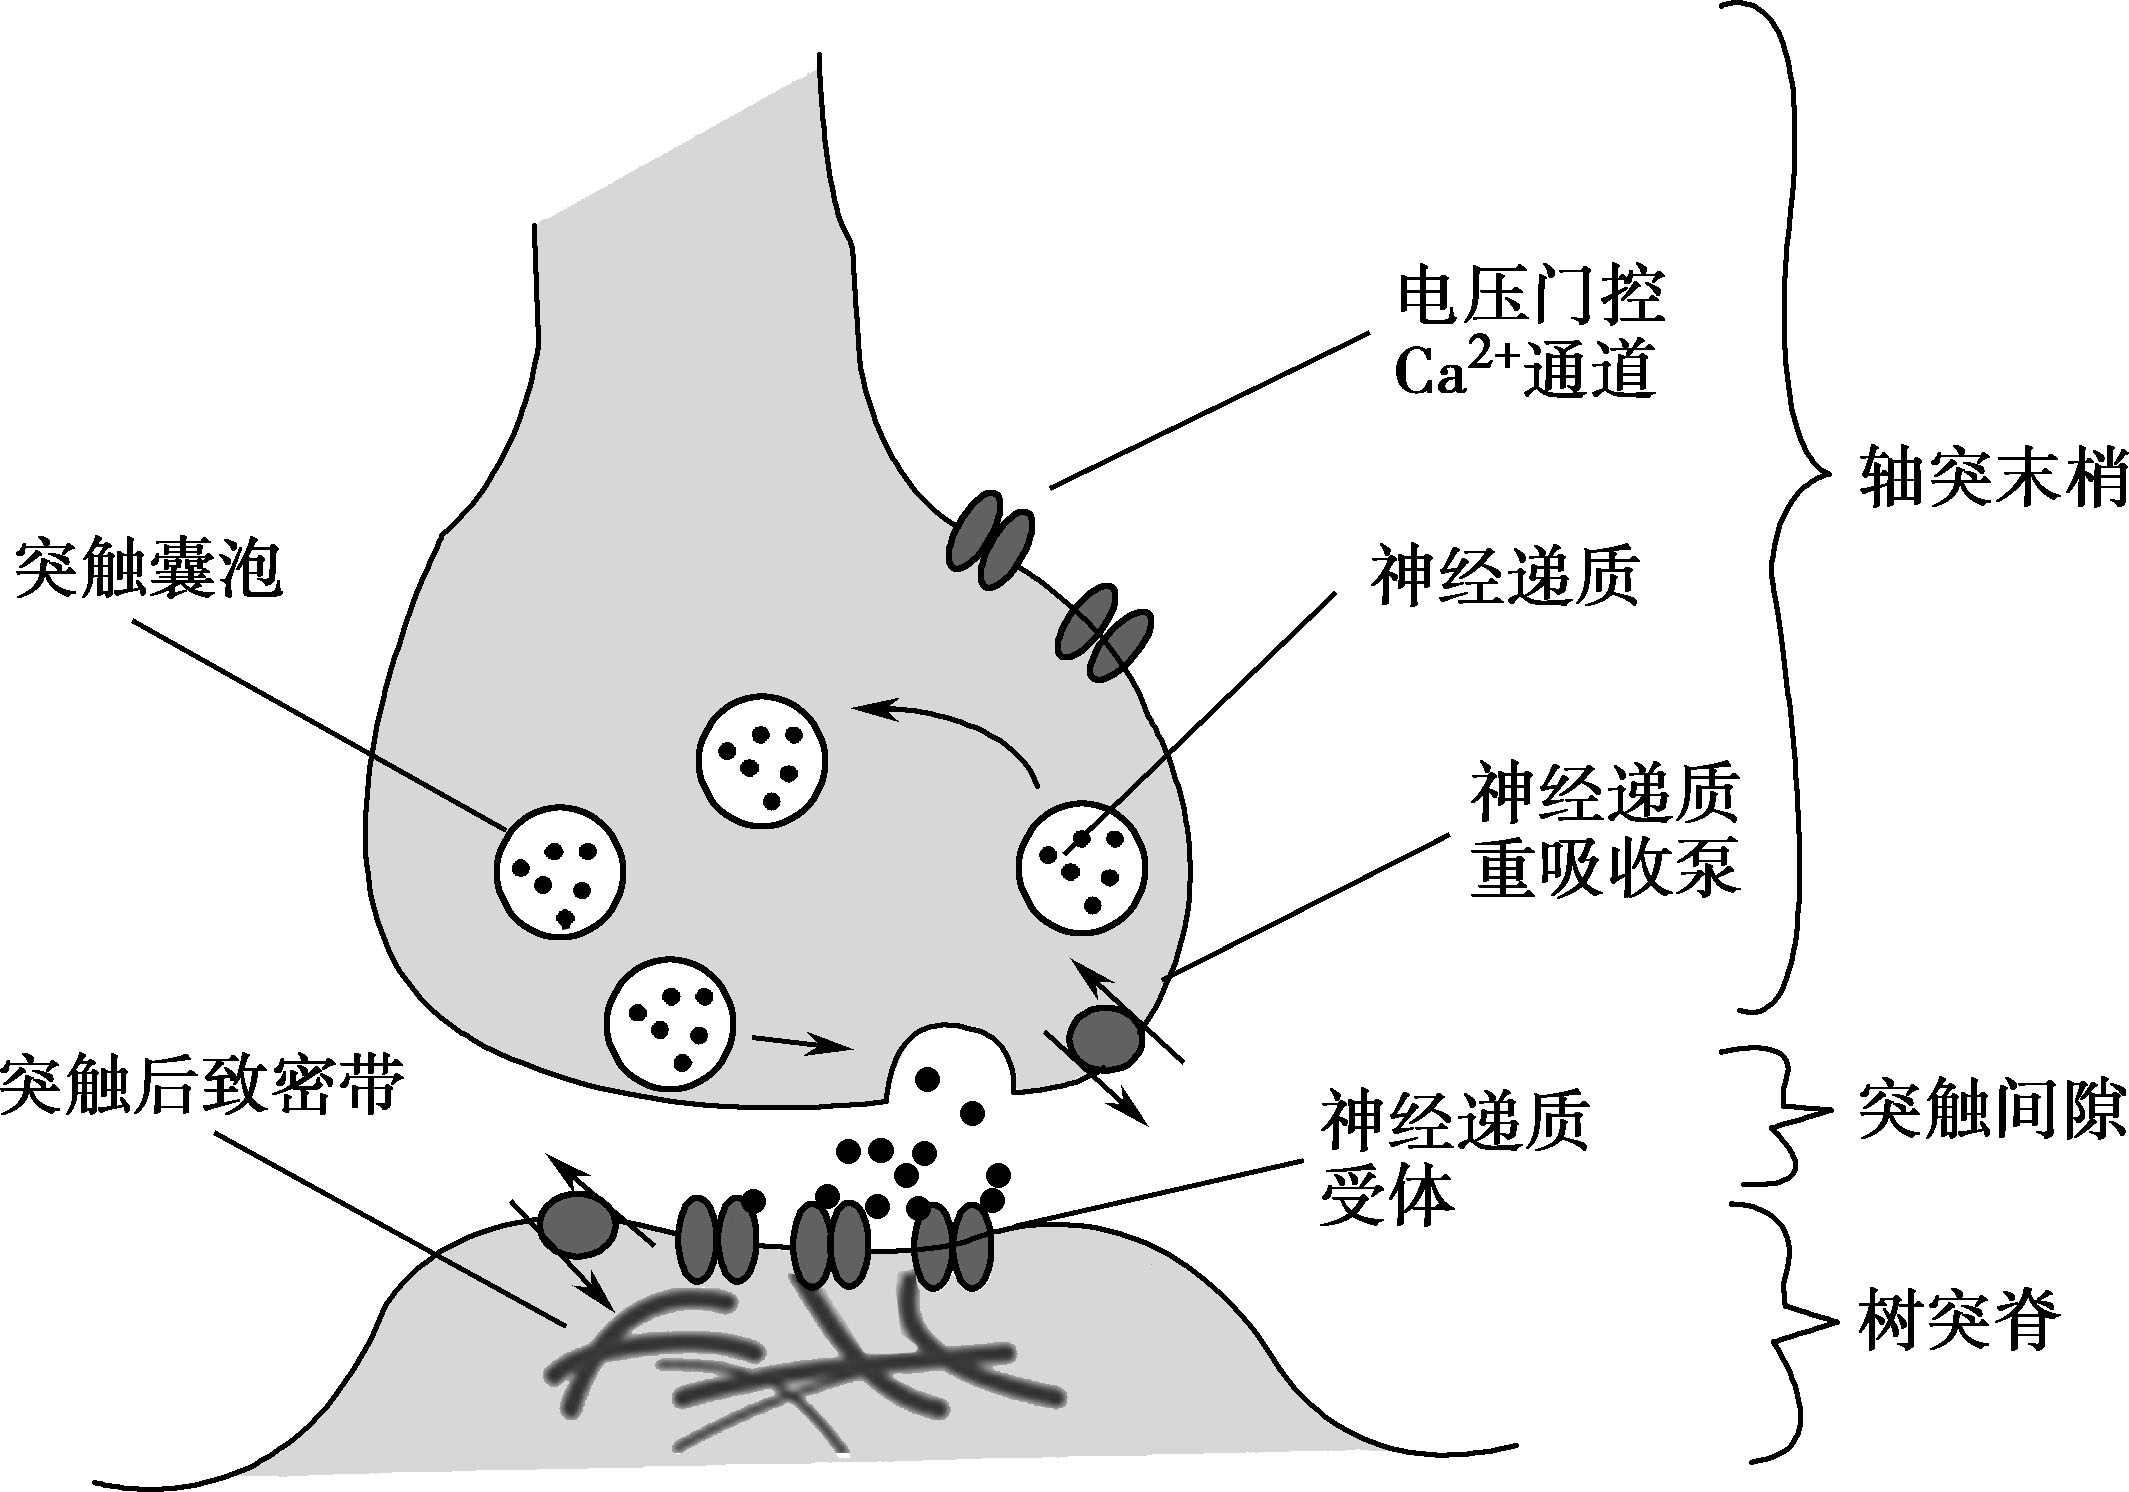 图2-5-1 化学性突触结构示意图